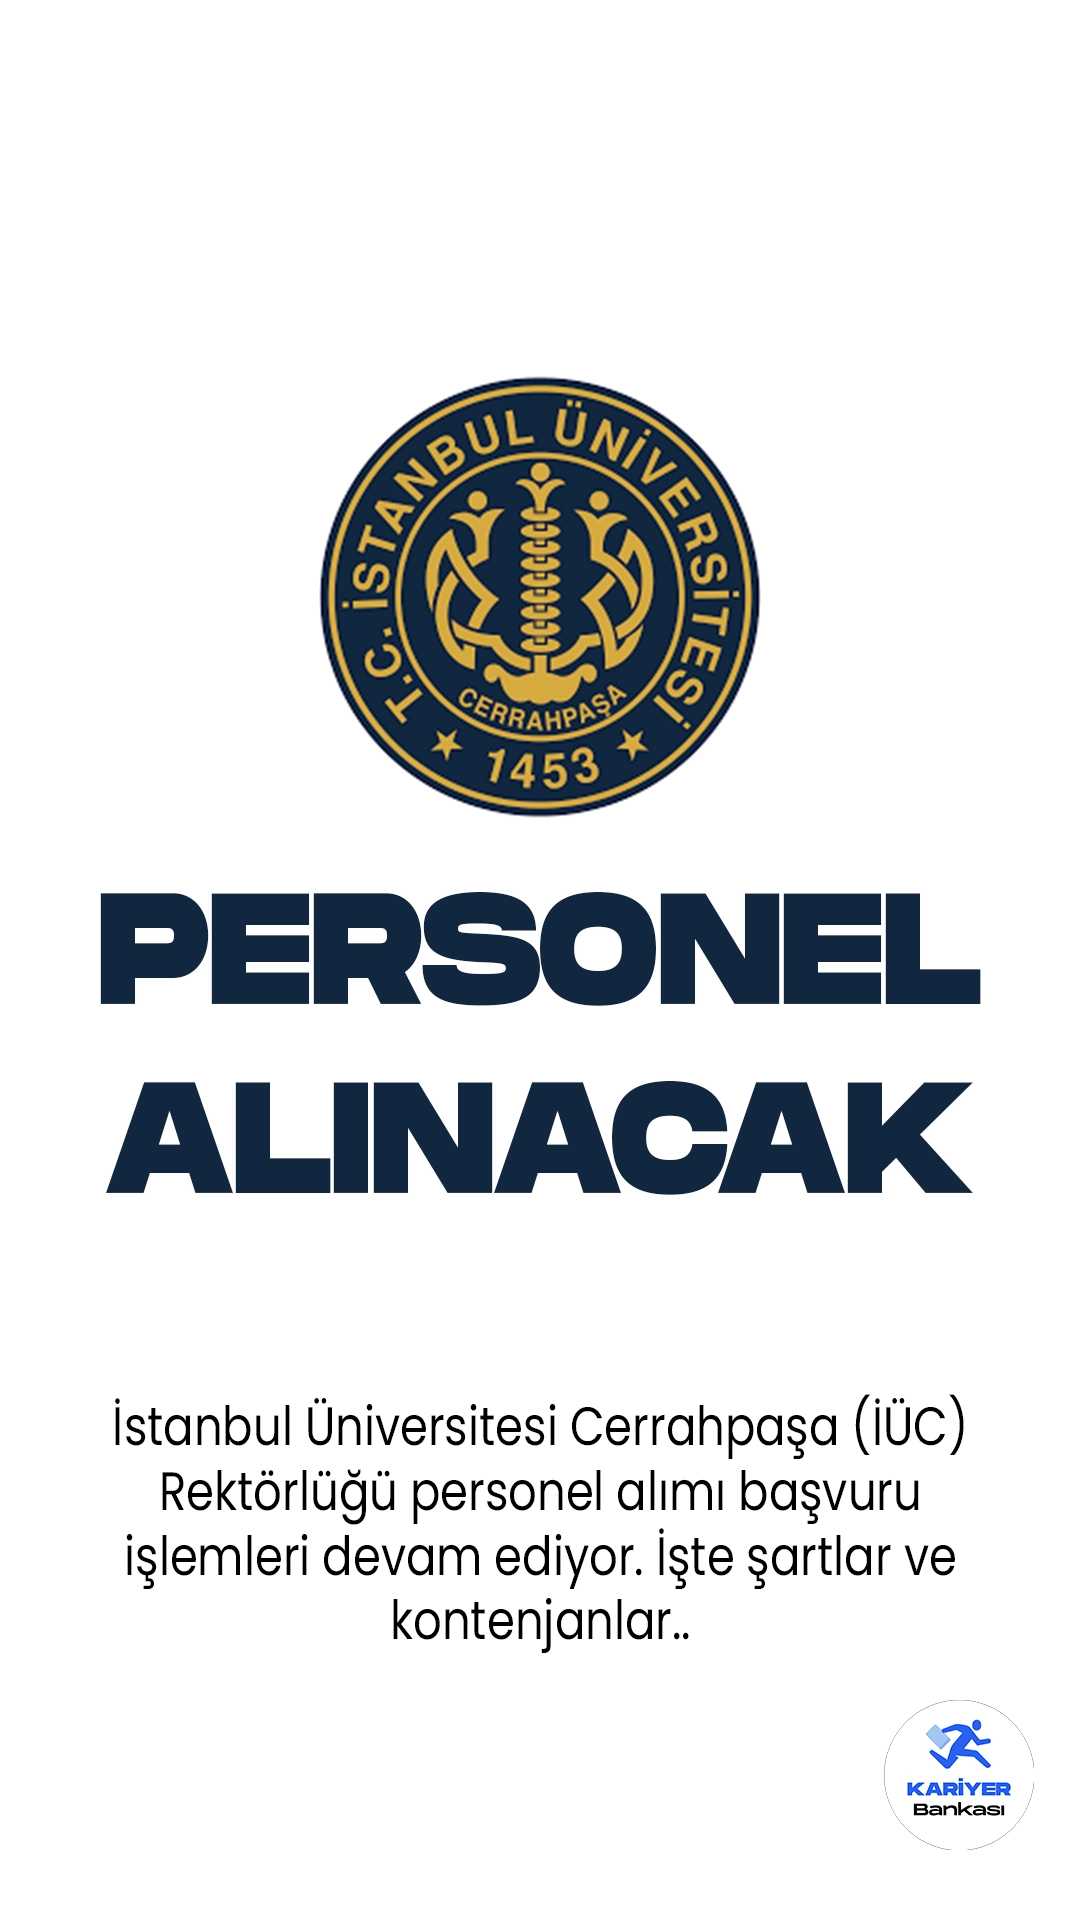 İstanbul Üniversitesi Cerrahpaşa (İÜC) Rektörlüğü personel alımı başvuru işlemleri devam ediyor.Cumhurbaşkanlığı SBB'de yayımlanan duyuruya göre, İÜC'ye birçok farklı unvanda olmak üzere 61 sözleşmeli personel alımı yapılacağına yer verildi. Başvuruların 10 Mayıs-24 Mayıs 2023 tarihleri arasında alınacağı aktarılırken, başvuru işlemlerinin belirtilen internet adresi üzerinden online olarak yapılacağı kaydedildi.